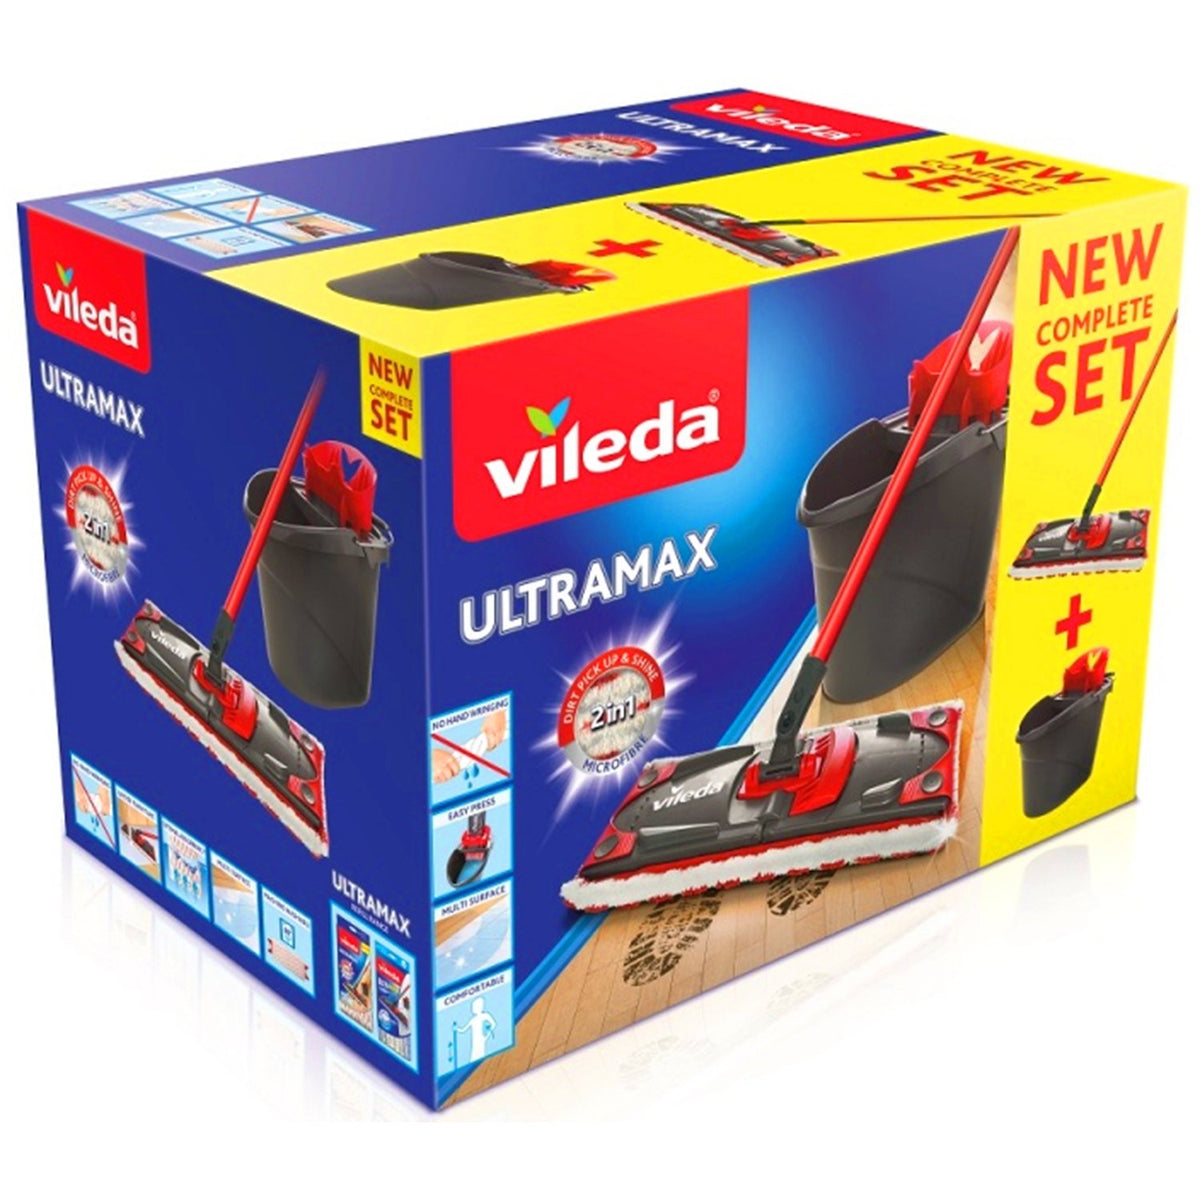 Lot de 4 Replacement Microfibre Pad pour Vileda EasyWring Ultramax